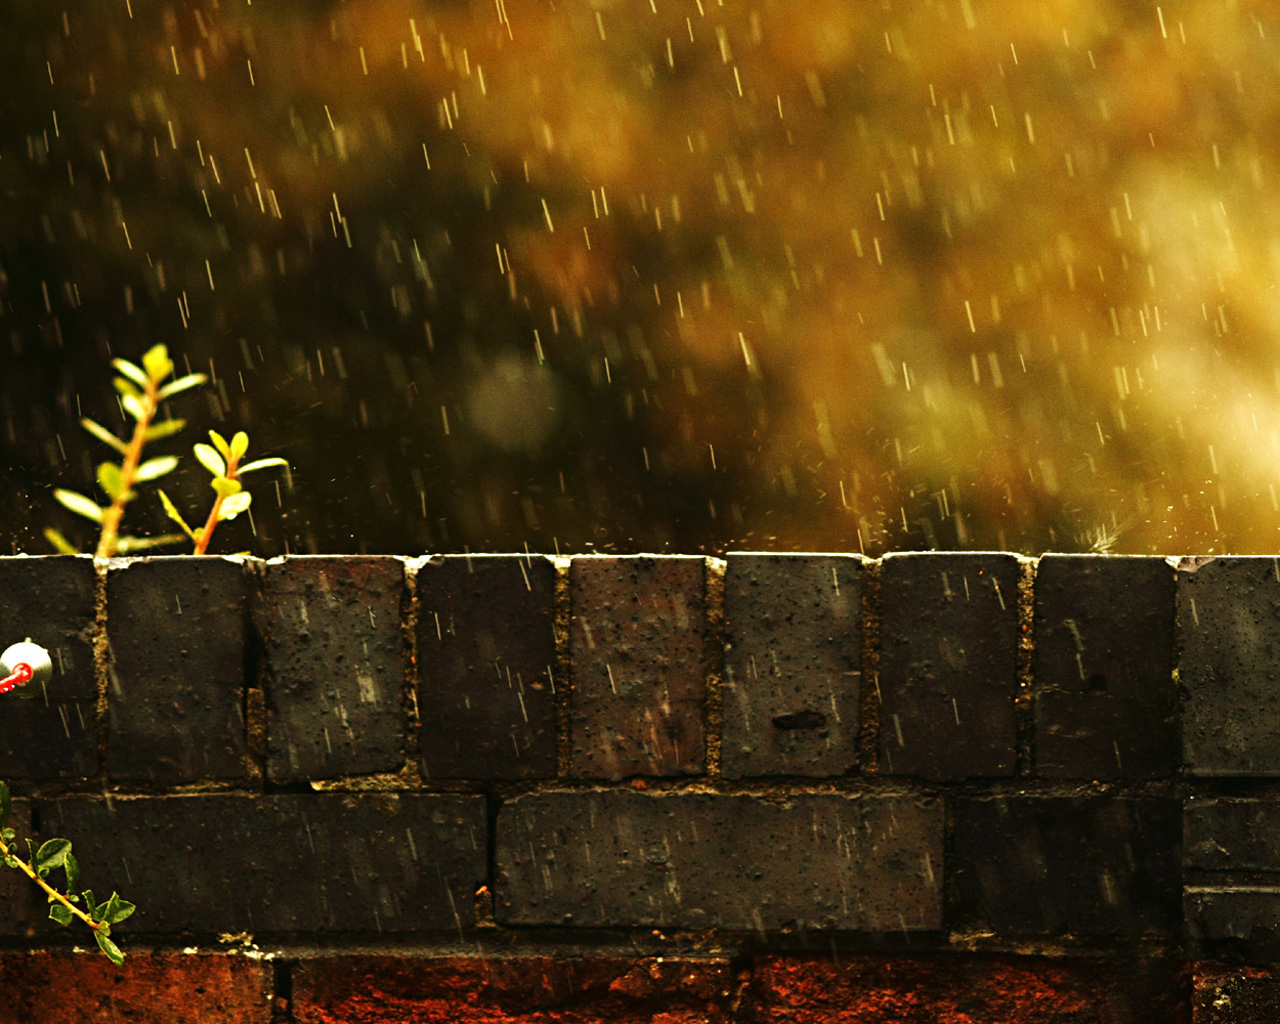 3d обои Обои дождя в теплой гамме. Кирпичная стена, на которой выросло растение, освещена солнцем. Все это поливают капли дождя.  дождь # 34422